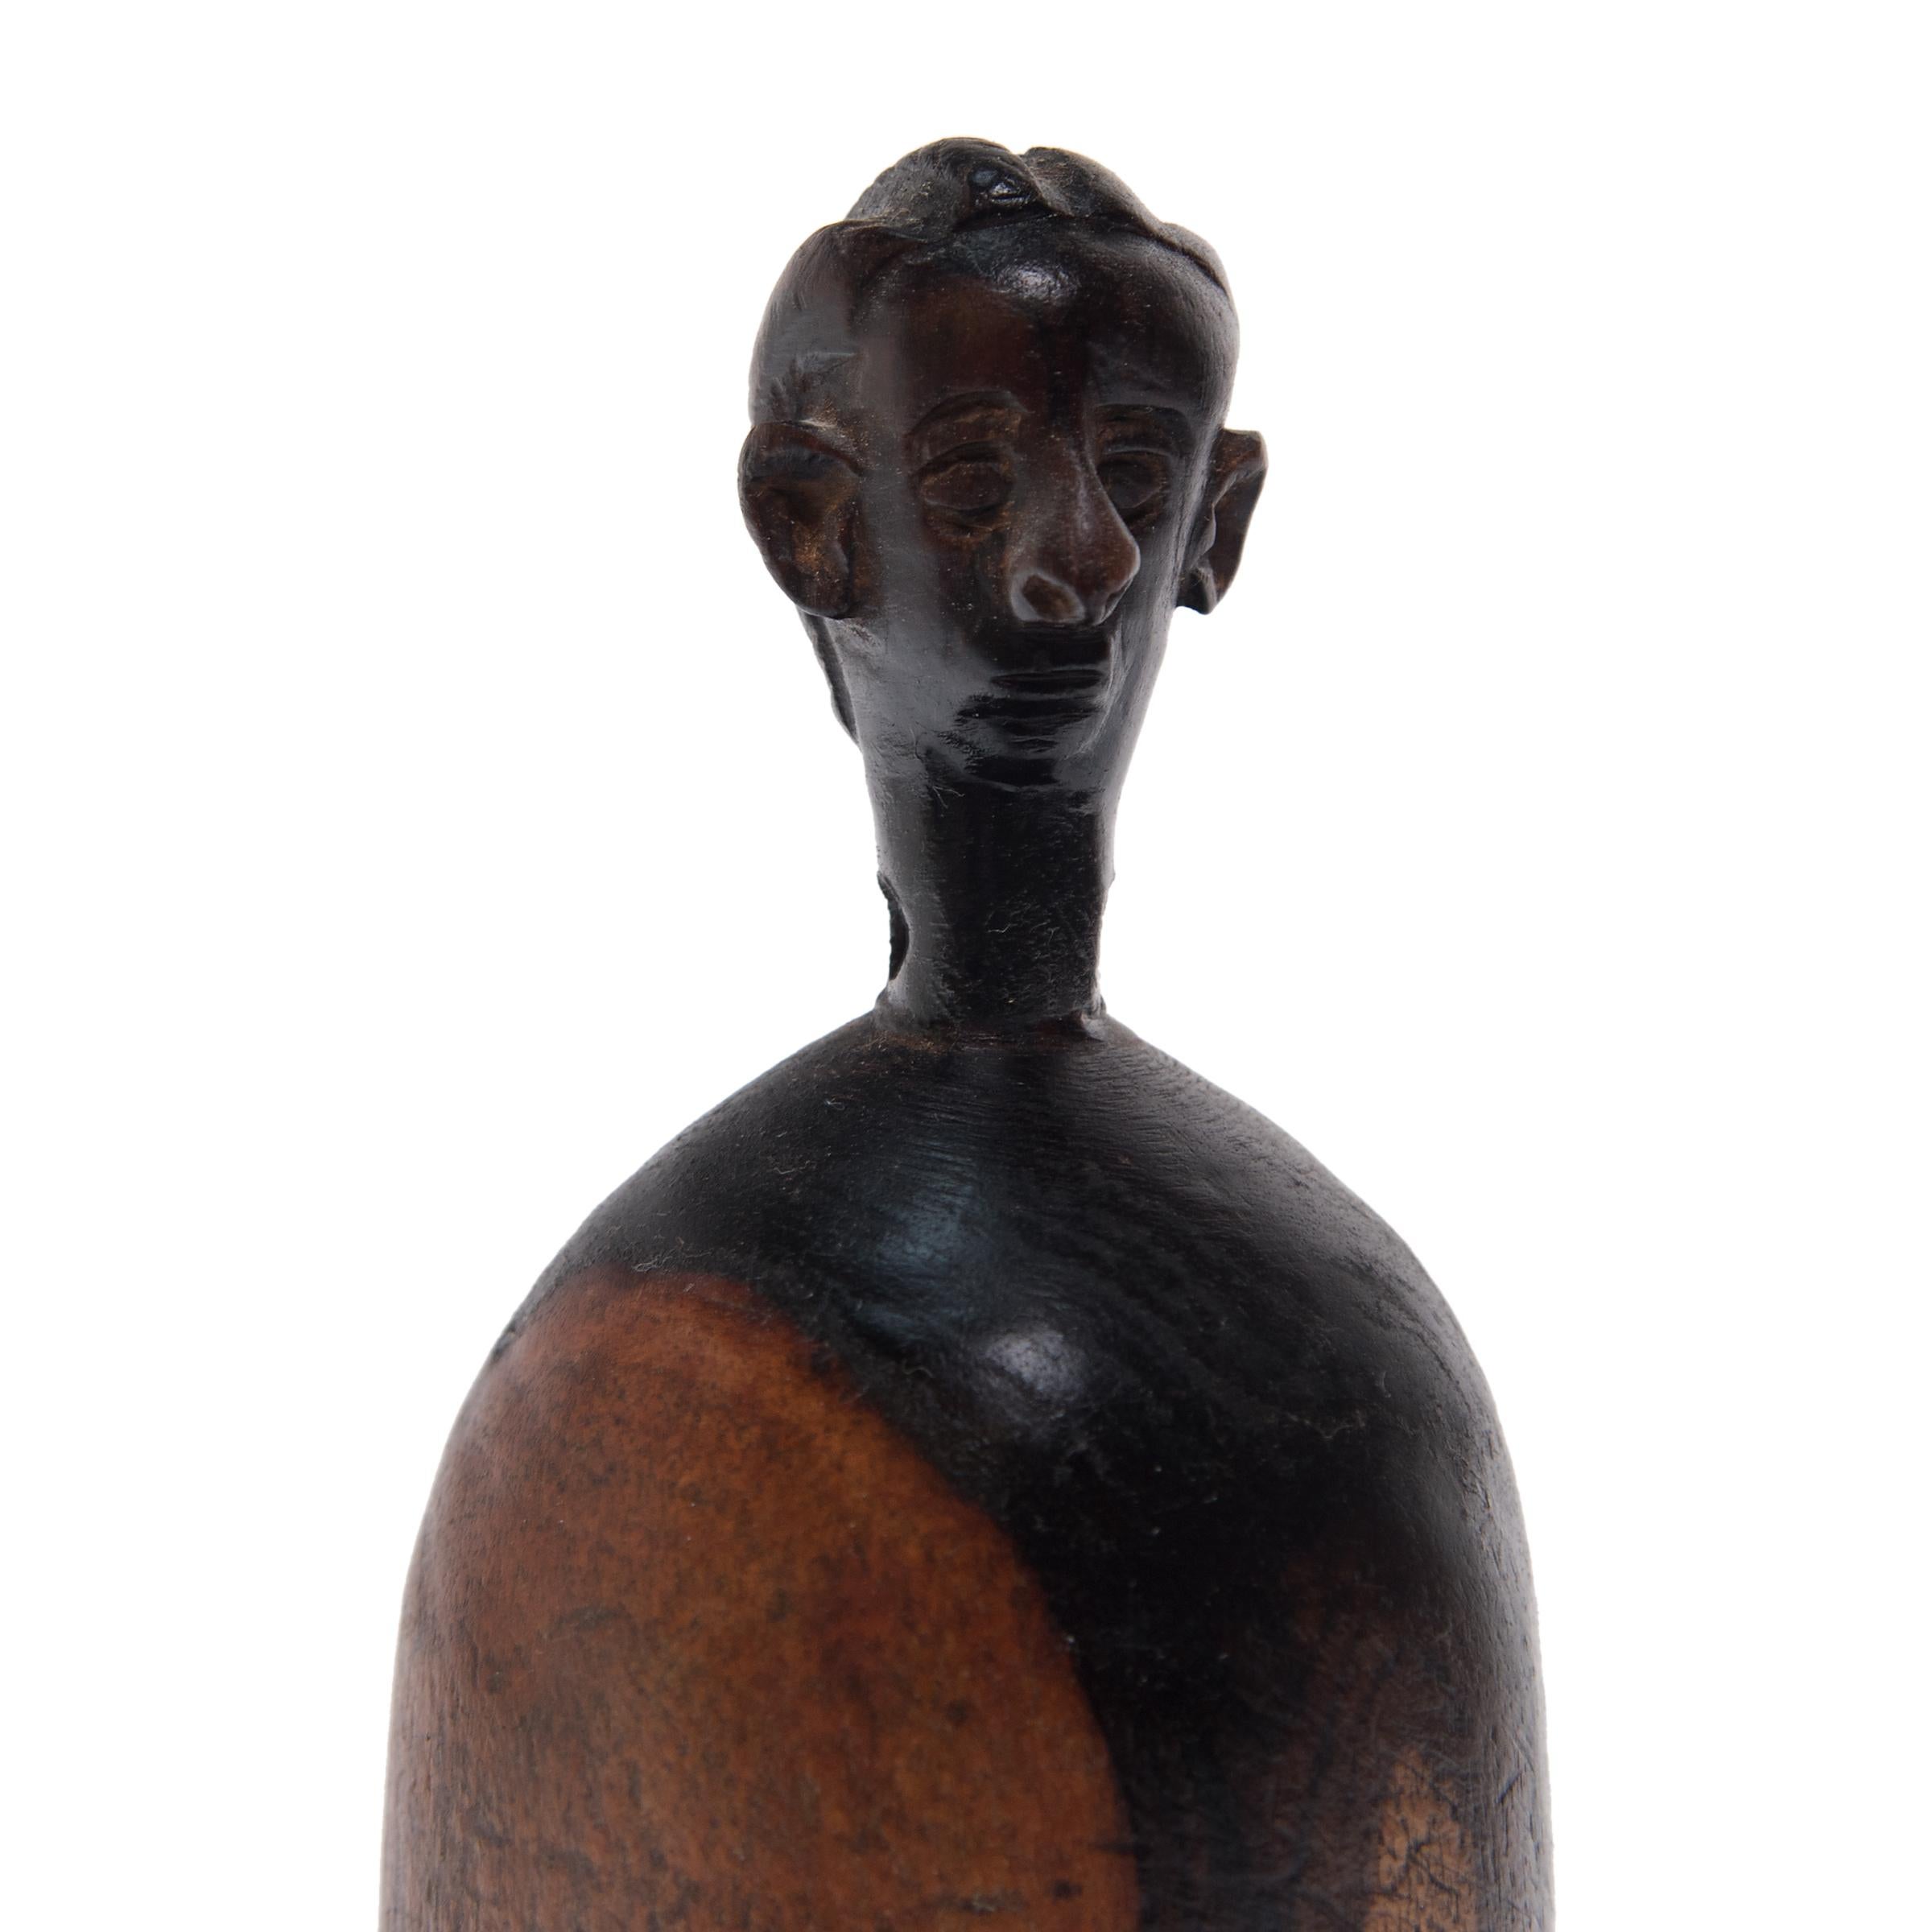 Diese geschnitzte Puppe, die wie ein echtes Kind gehätschelt wird, gehörte einst einem jungen Mädchen aus dem Volk der Namji im Nordwesten Kameruns. Die Figur, die von ihrer Besitzerin überallhin mitgenommen und liebevoll mit Perlen oder Kleidern